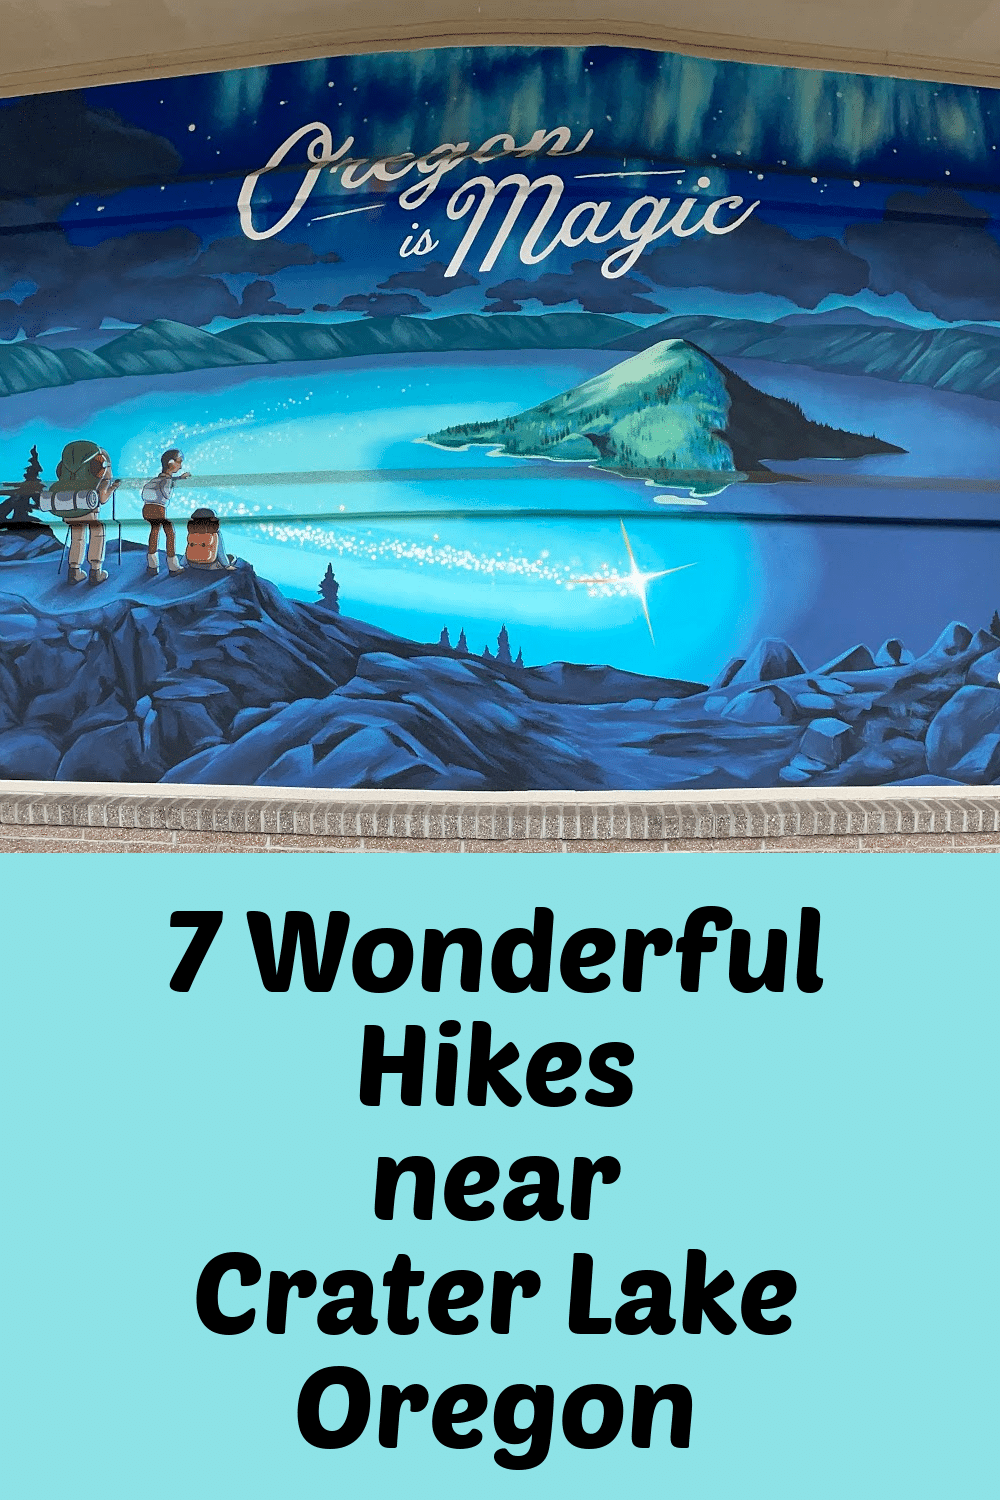 Pinterest Pin of the Oregon is Magic Mural Crater Lake Mural